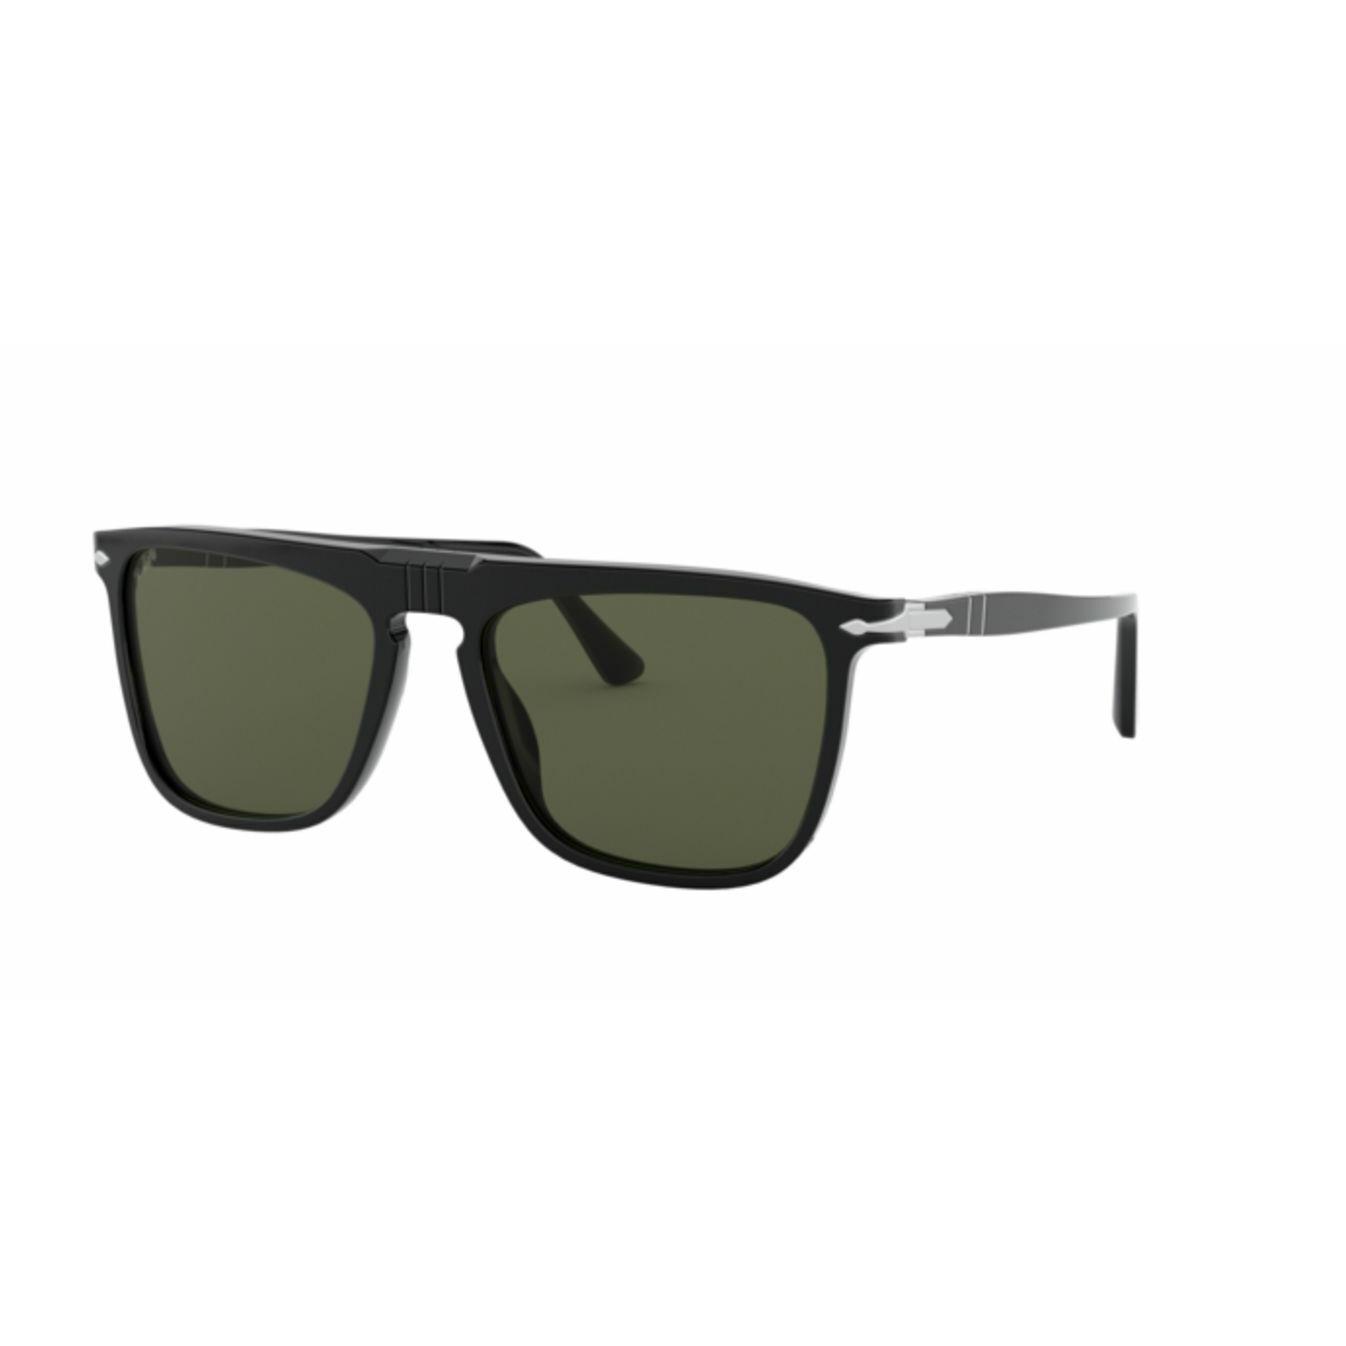 Persol 0PO3225S-95/58 Black Polarized 3225 S Sunglasses